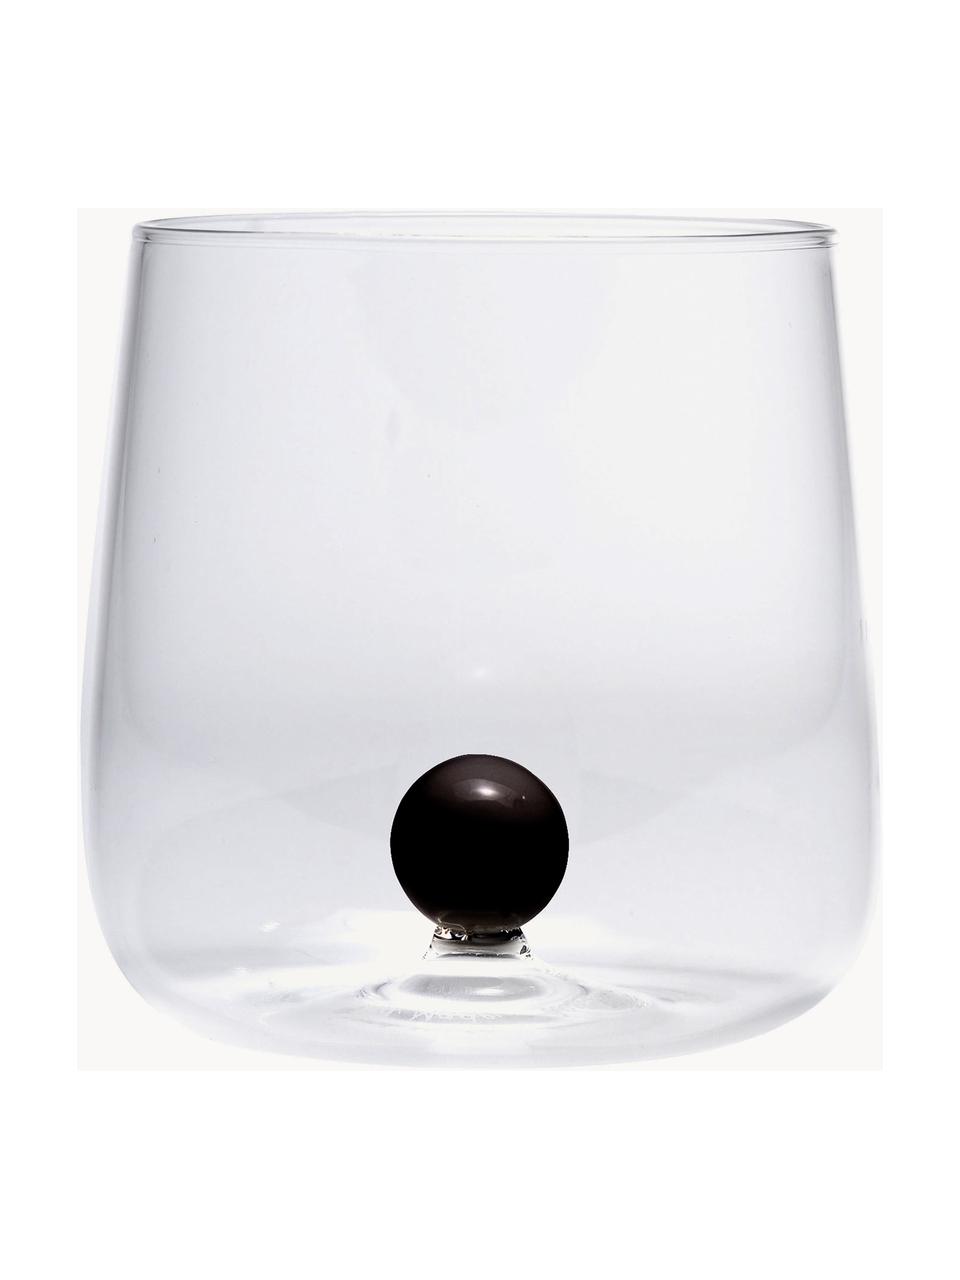 Ručně foukané sklenice z borosilikátového skla Bilia, 6 ks, Borosilikátové sklo, Transparentní, černá, Ø 9 cm, V 9 cm, 440 ml